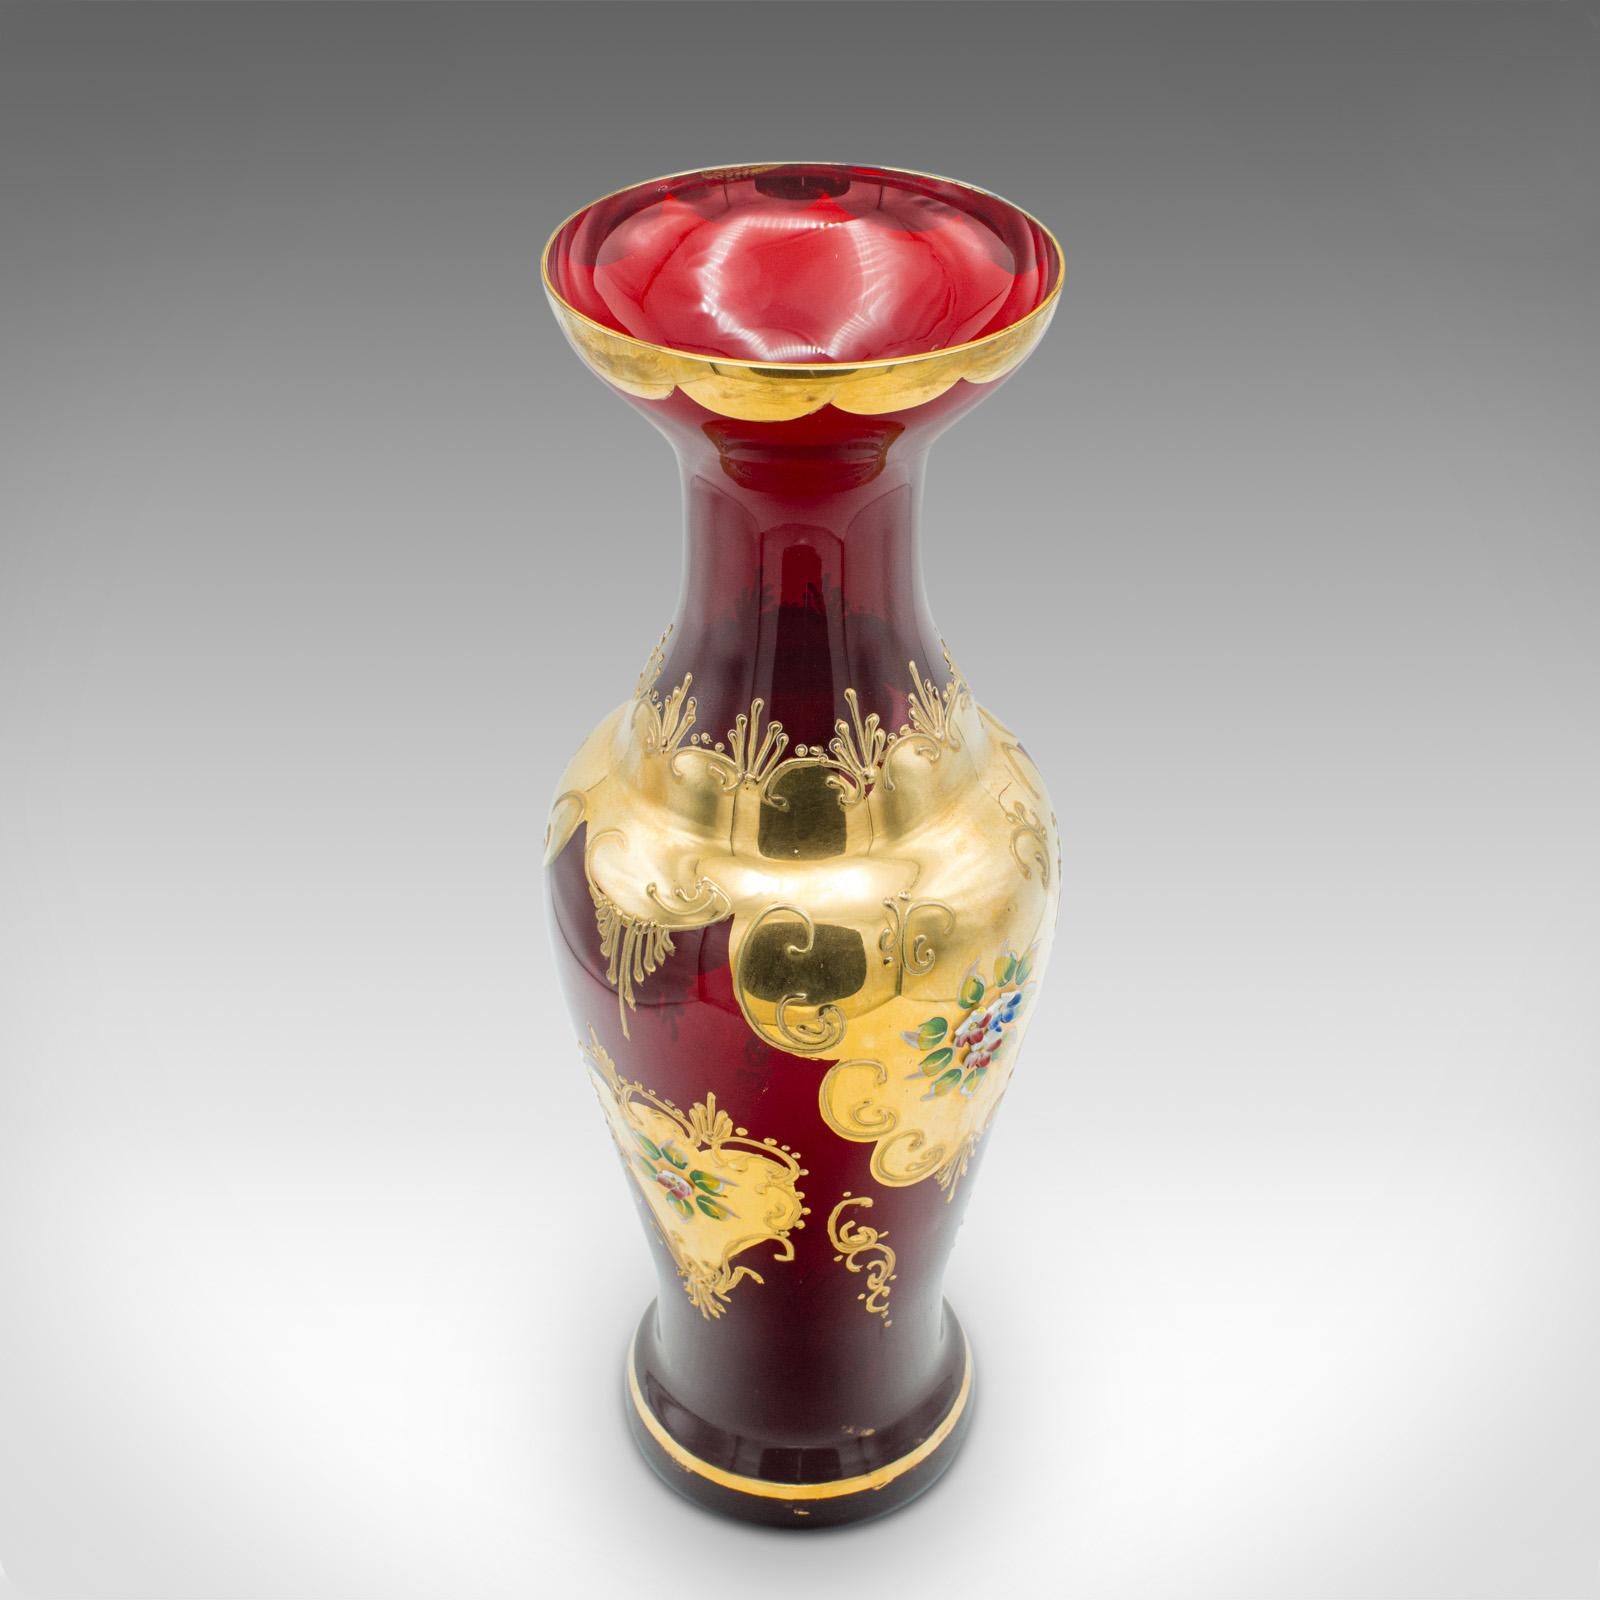 Vintage Venetian Show Vase, Italian Art Glass, Gilt, Decorative Flower Urn, 1970 For Sale 1